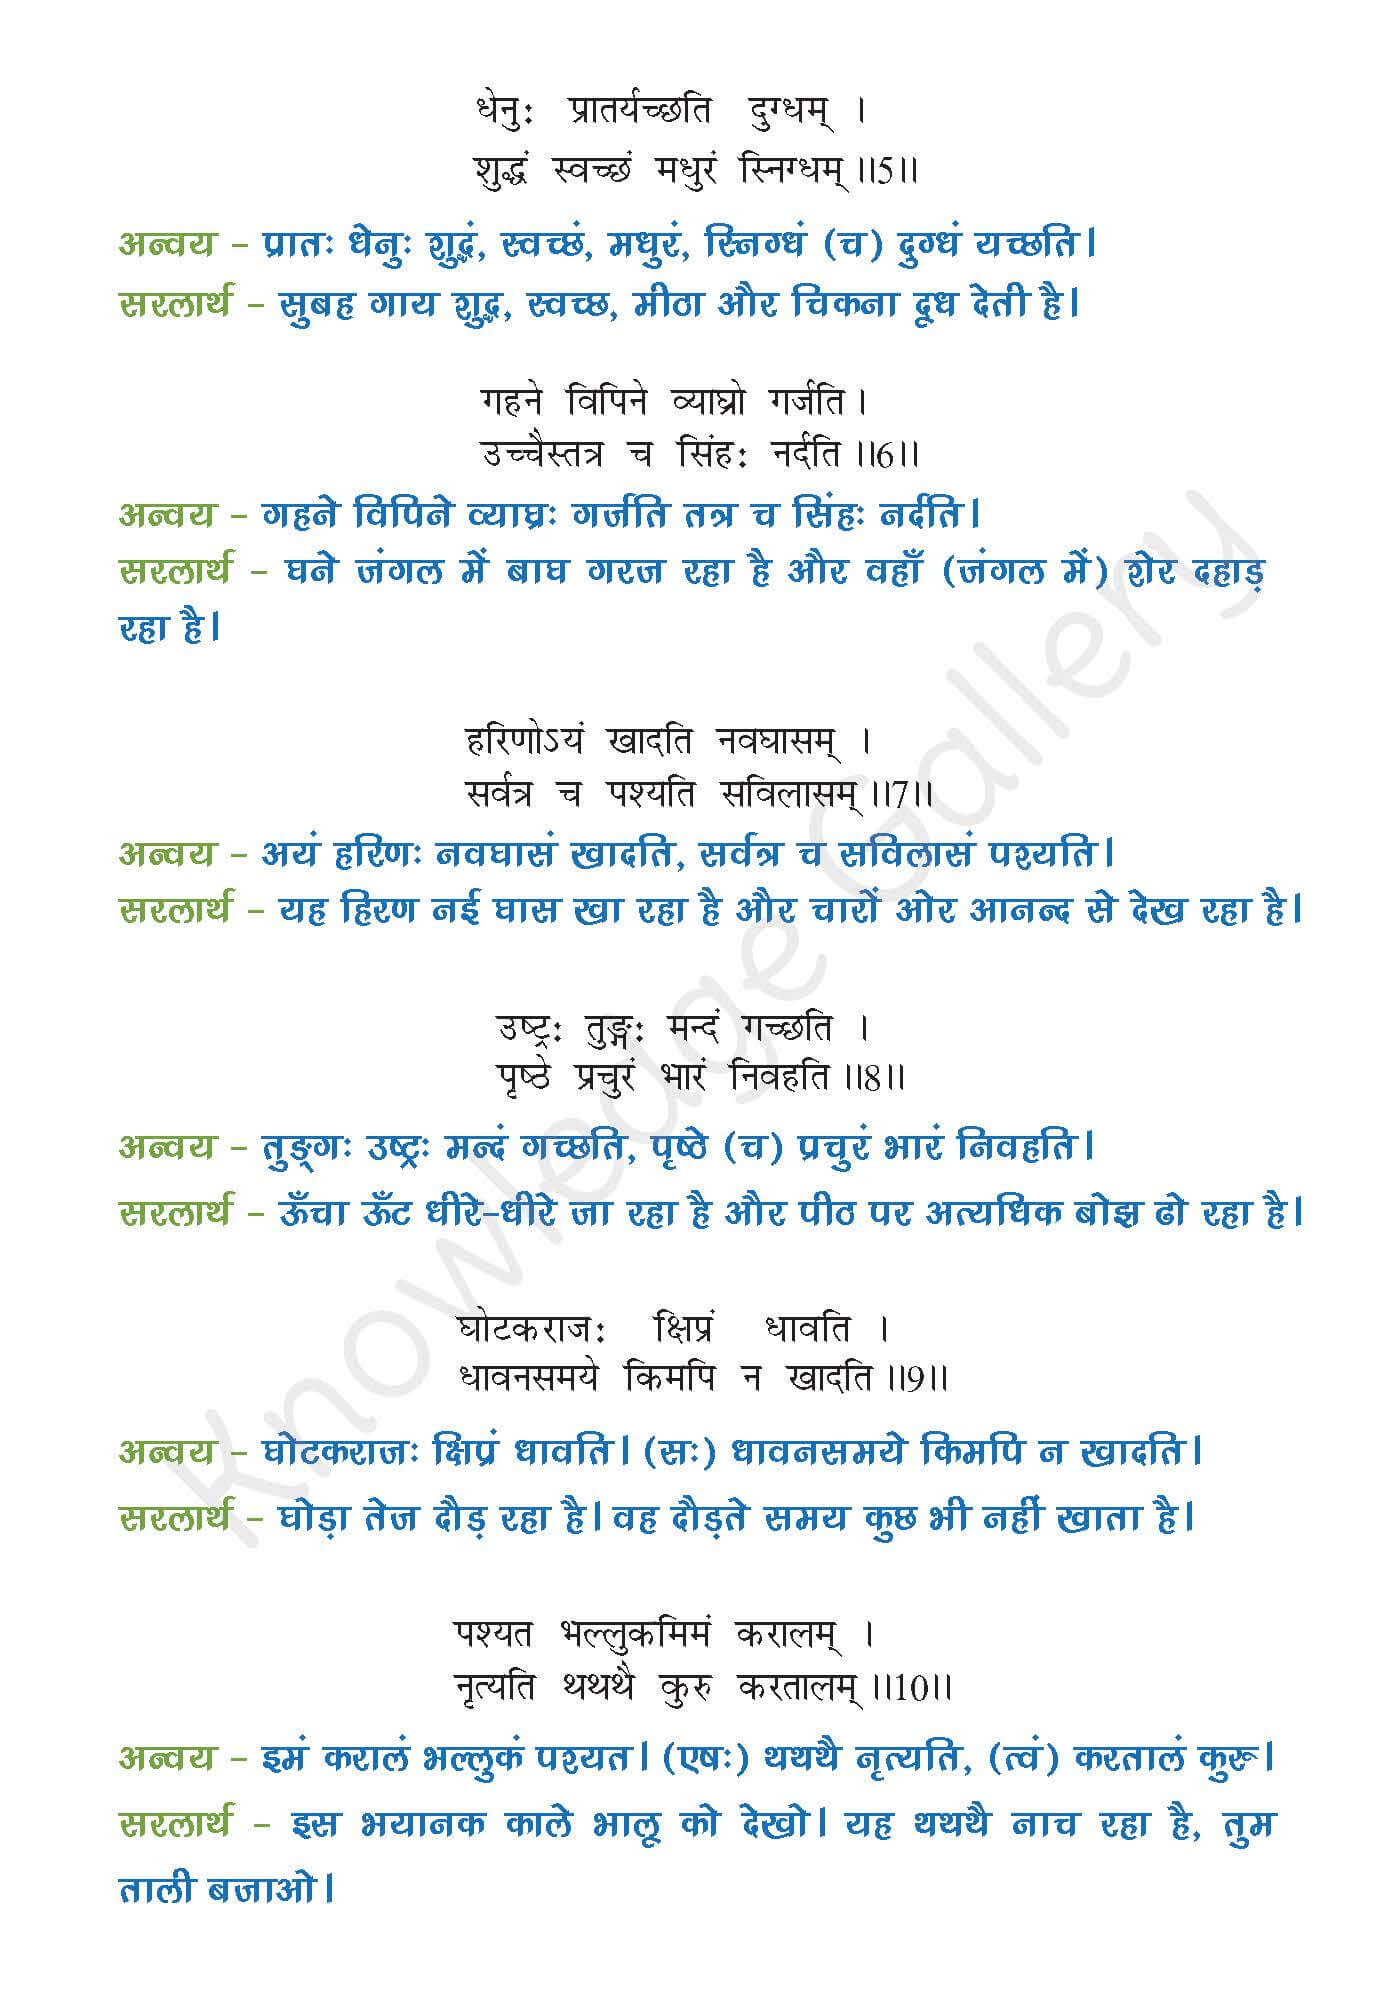 NCERT Solution For Class 7 Sanskrit Chapter 13 part 2